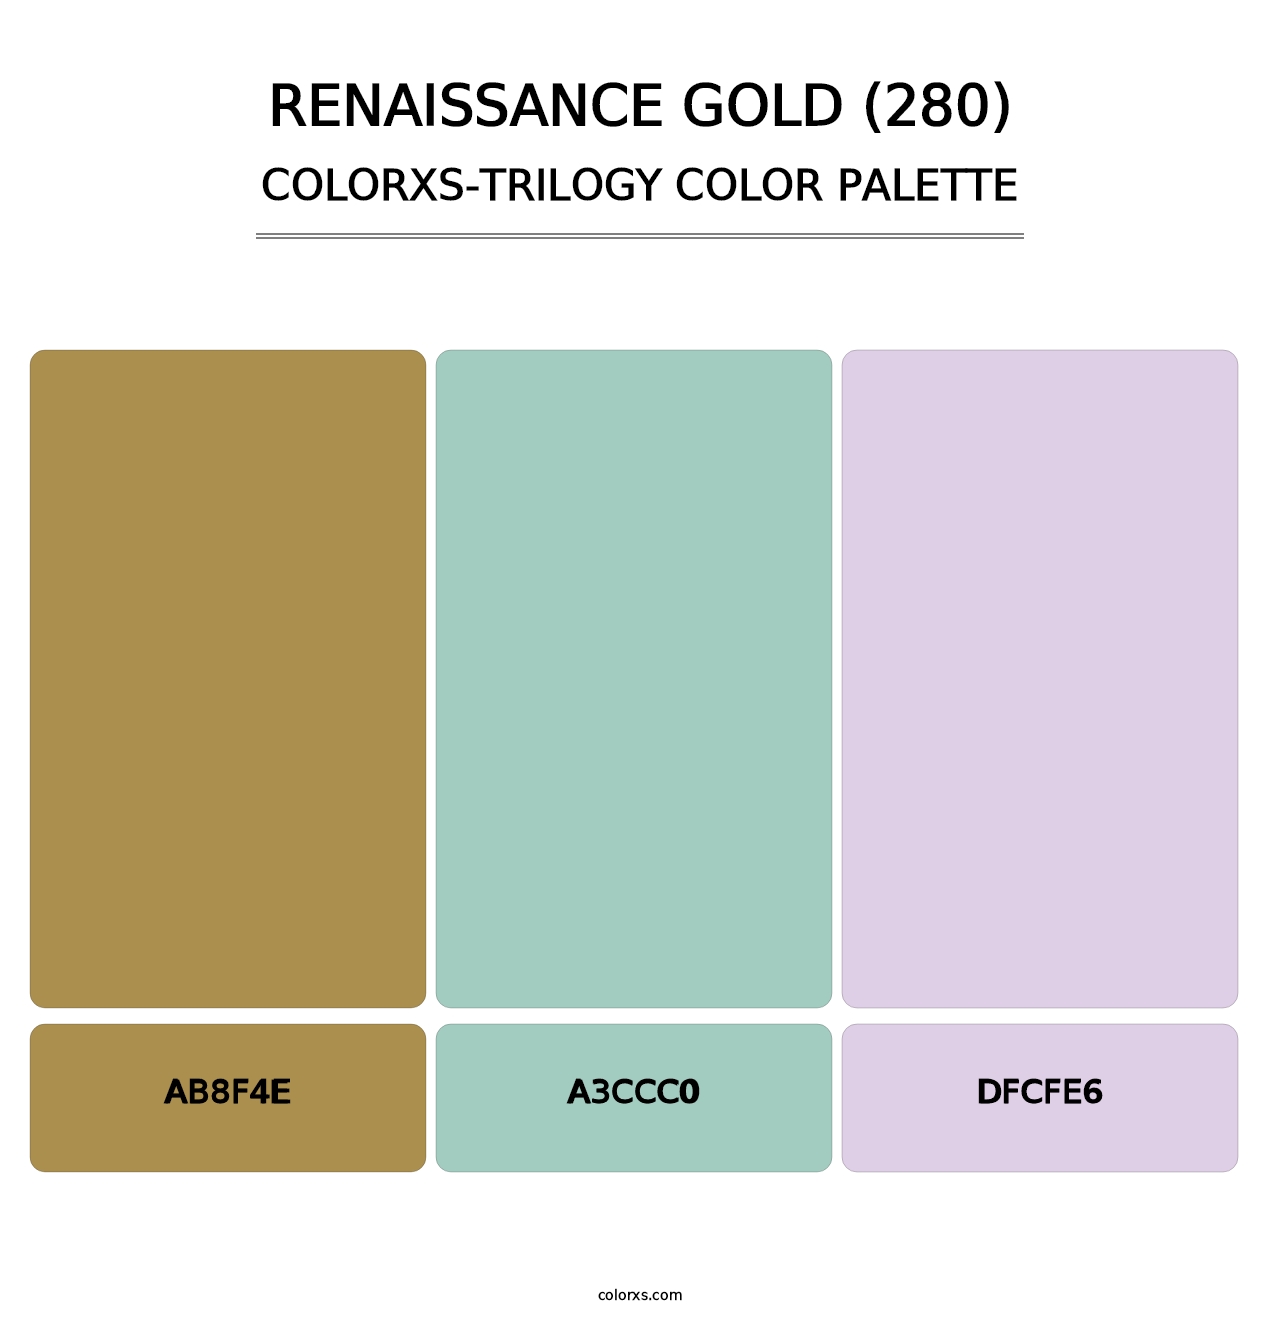 Renaissance Gold (280) - Colorxs Trilogy Palette